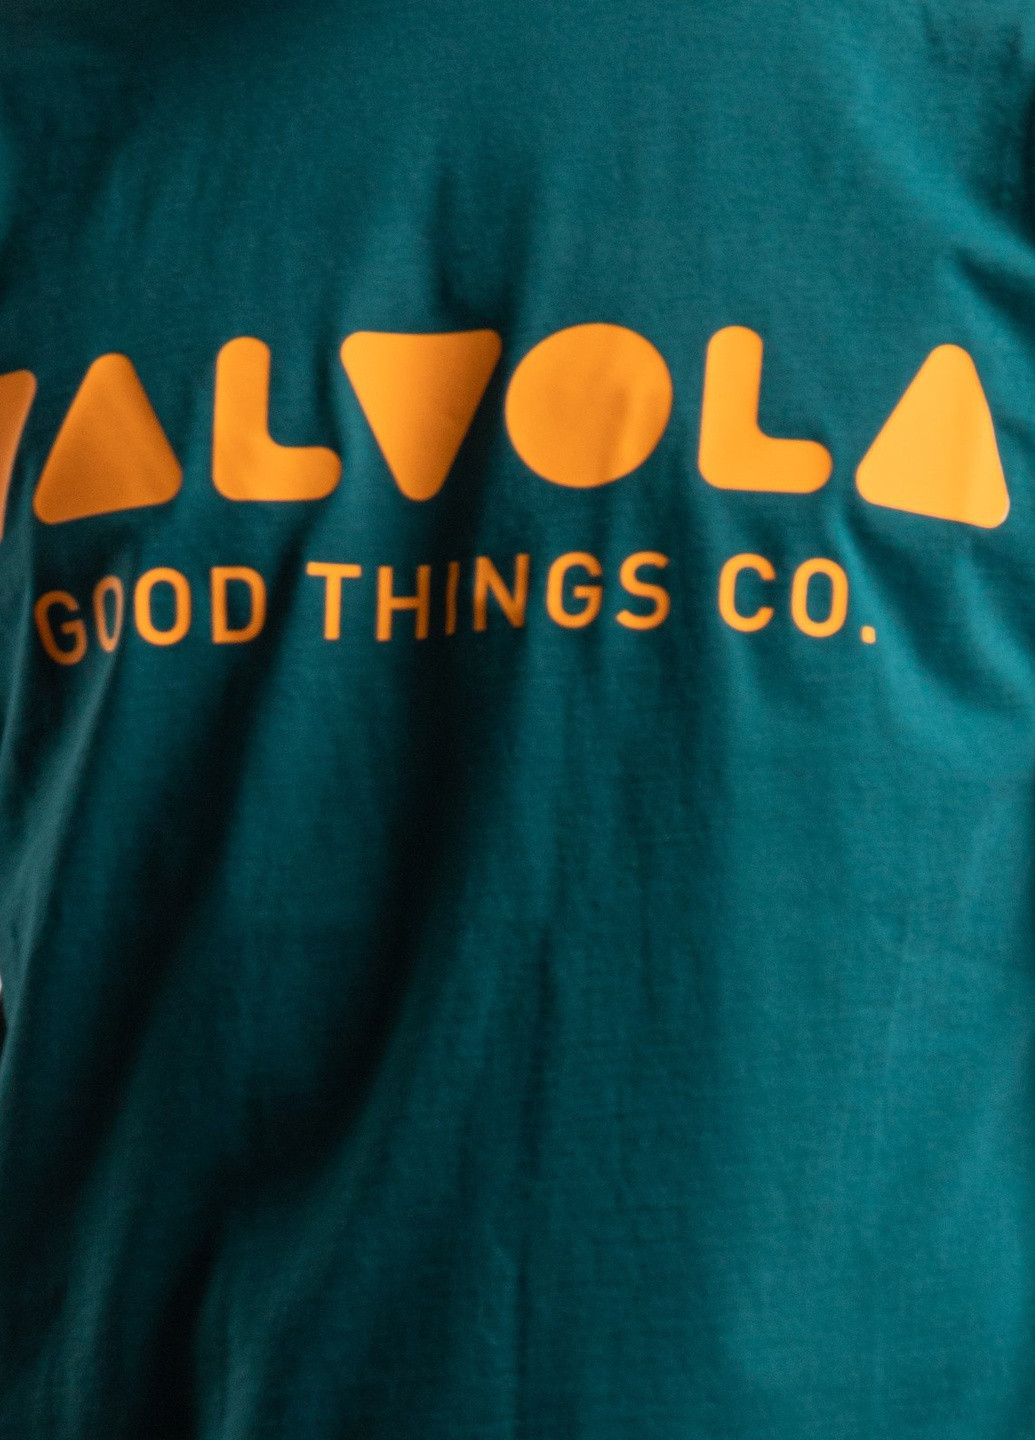 Морской волны футболка с логотипом цвета морской волны Valvola